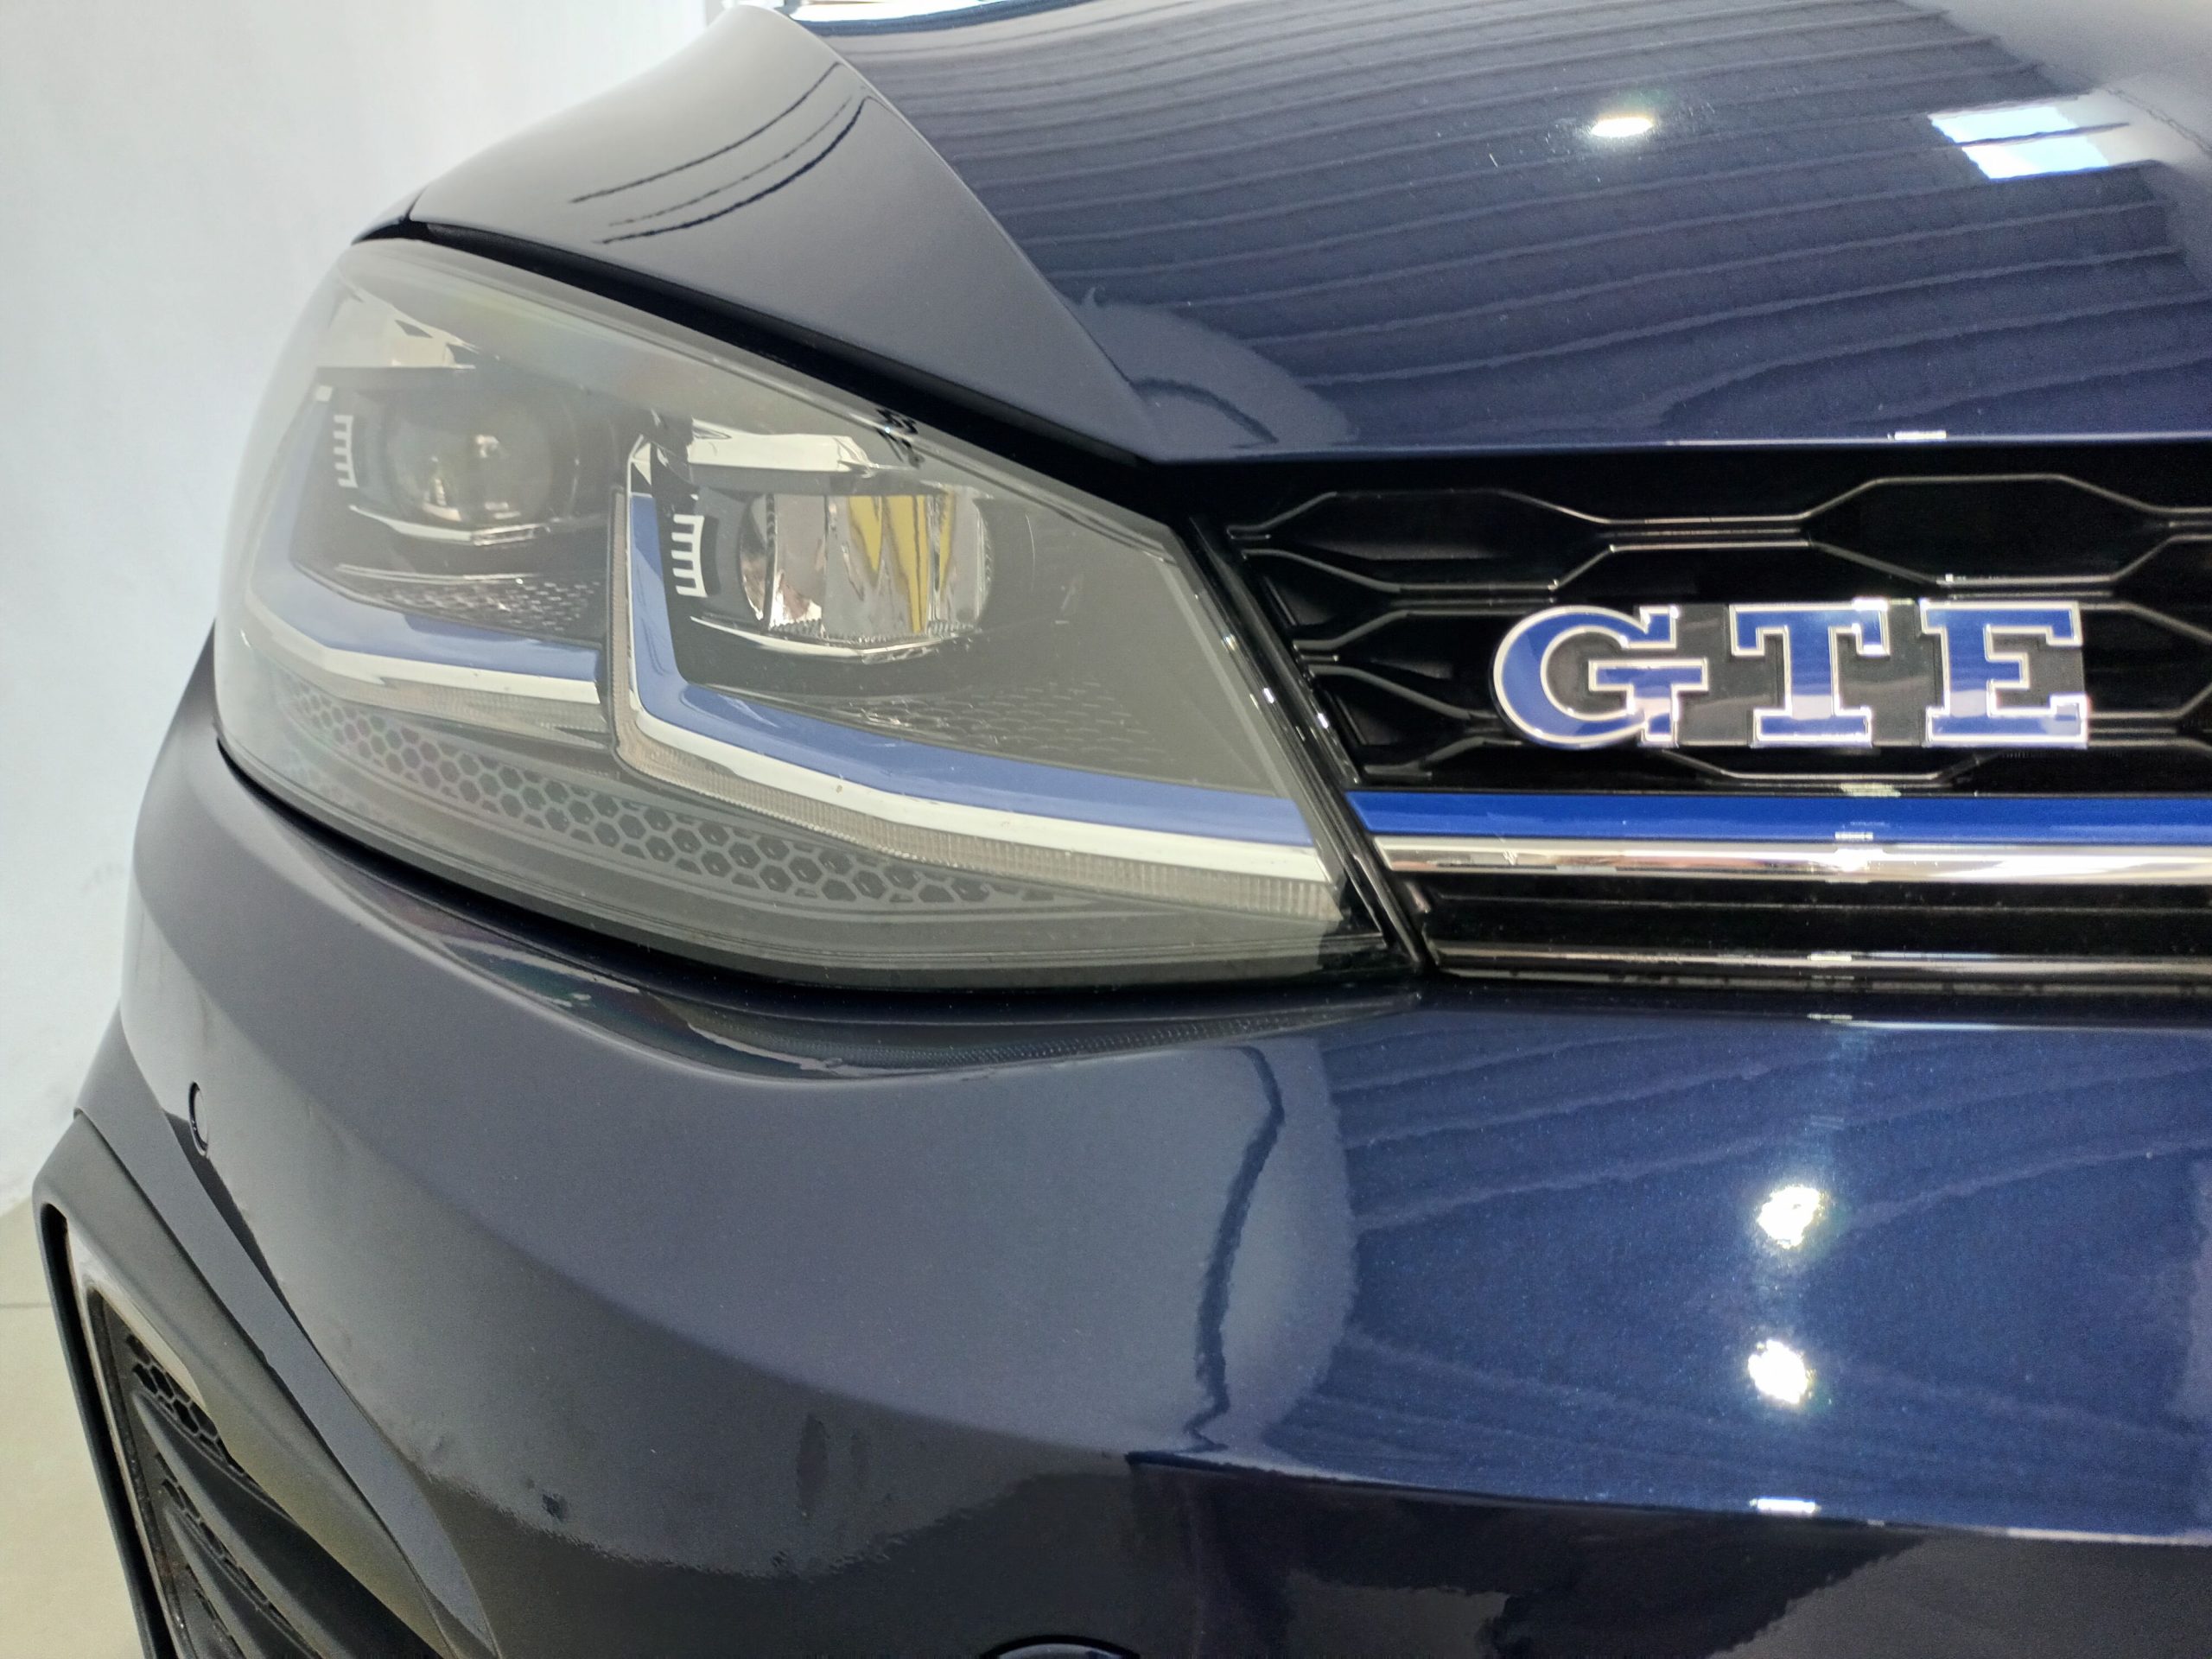 VW GOLF GTE 1.4 TSi e-power 204CV. DSG 6 vel. ocasió